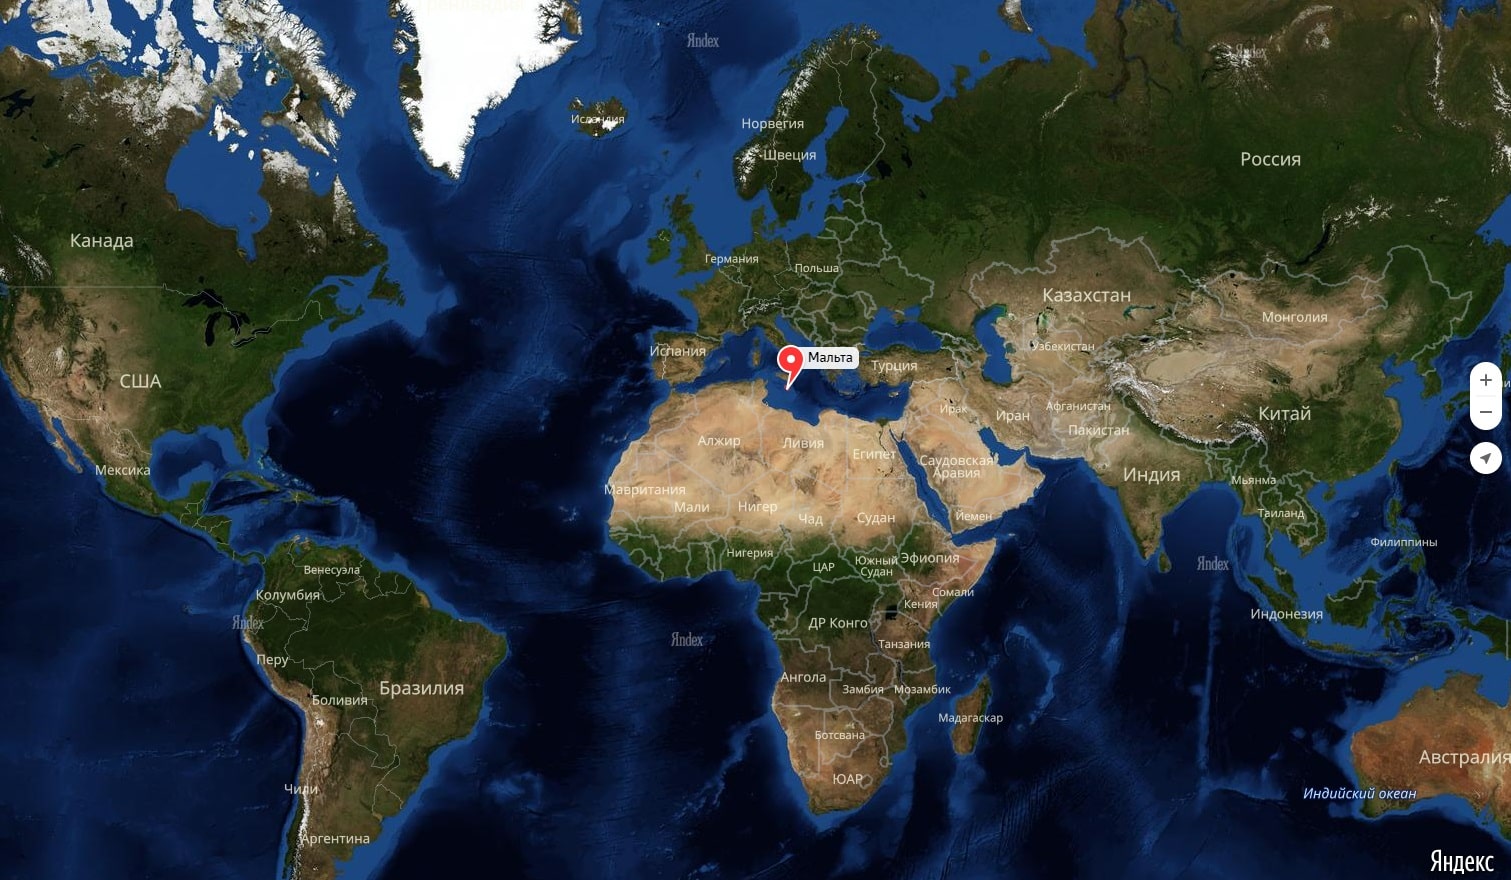 Мальта на карте мира, где находится на русском языке